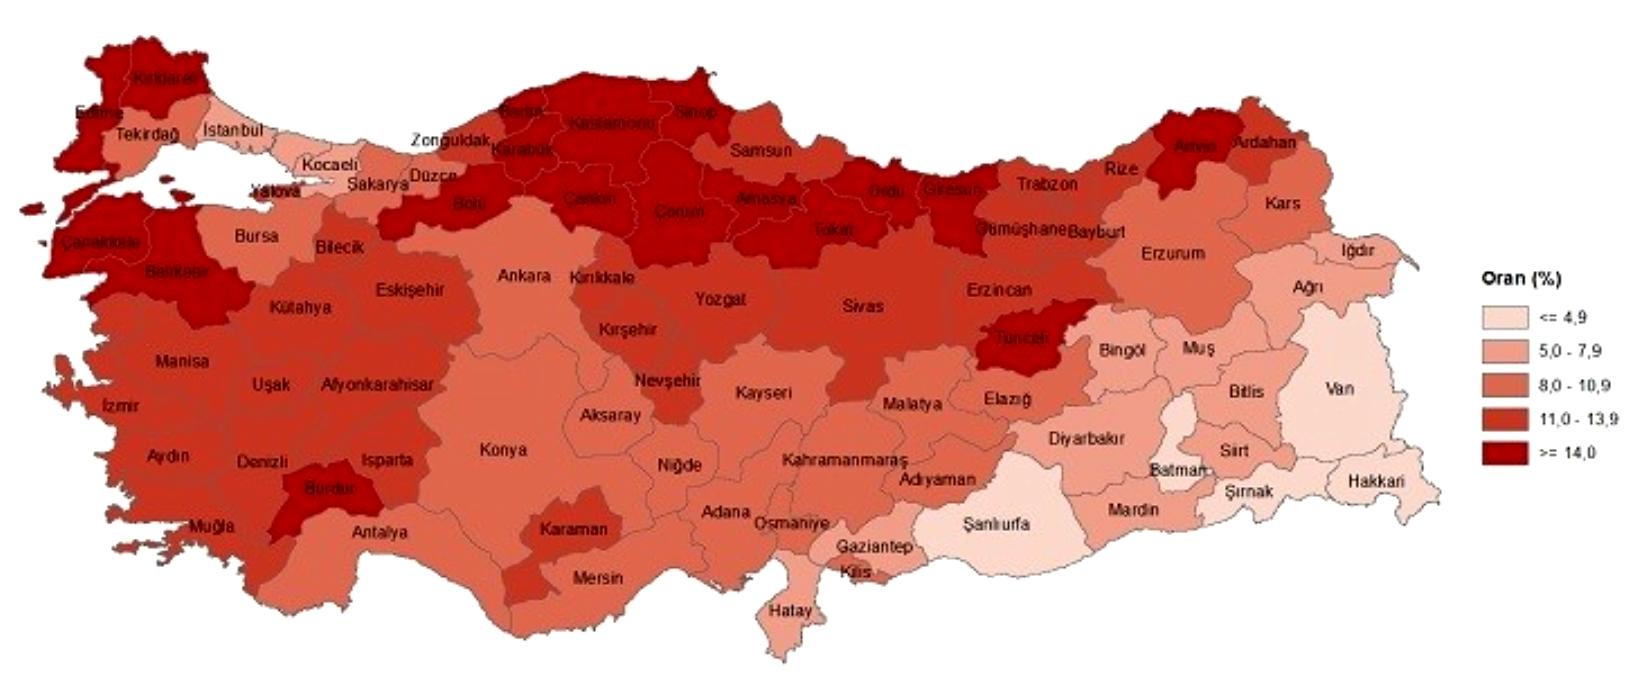 Ardahan'da Yaşlı Nüfus Sayısı 13 bin 89